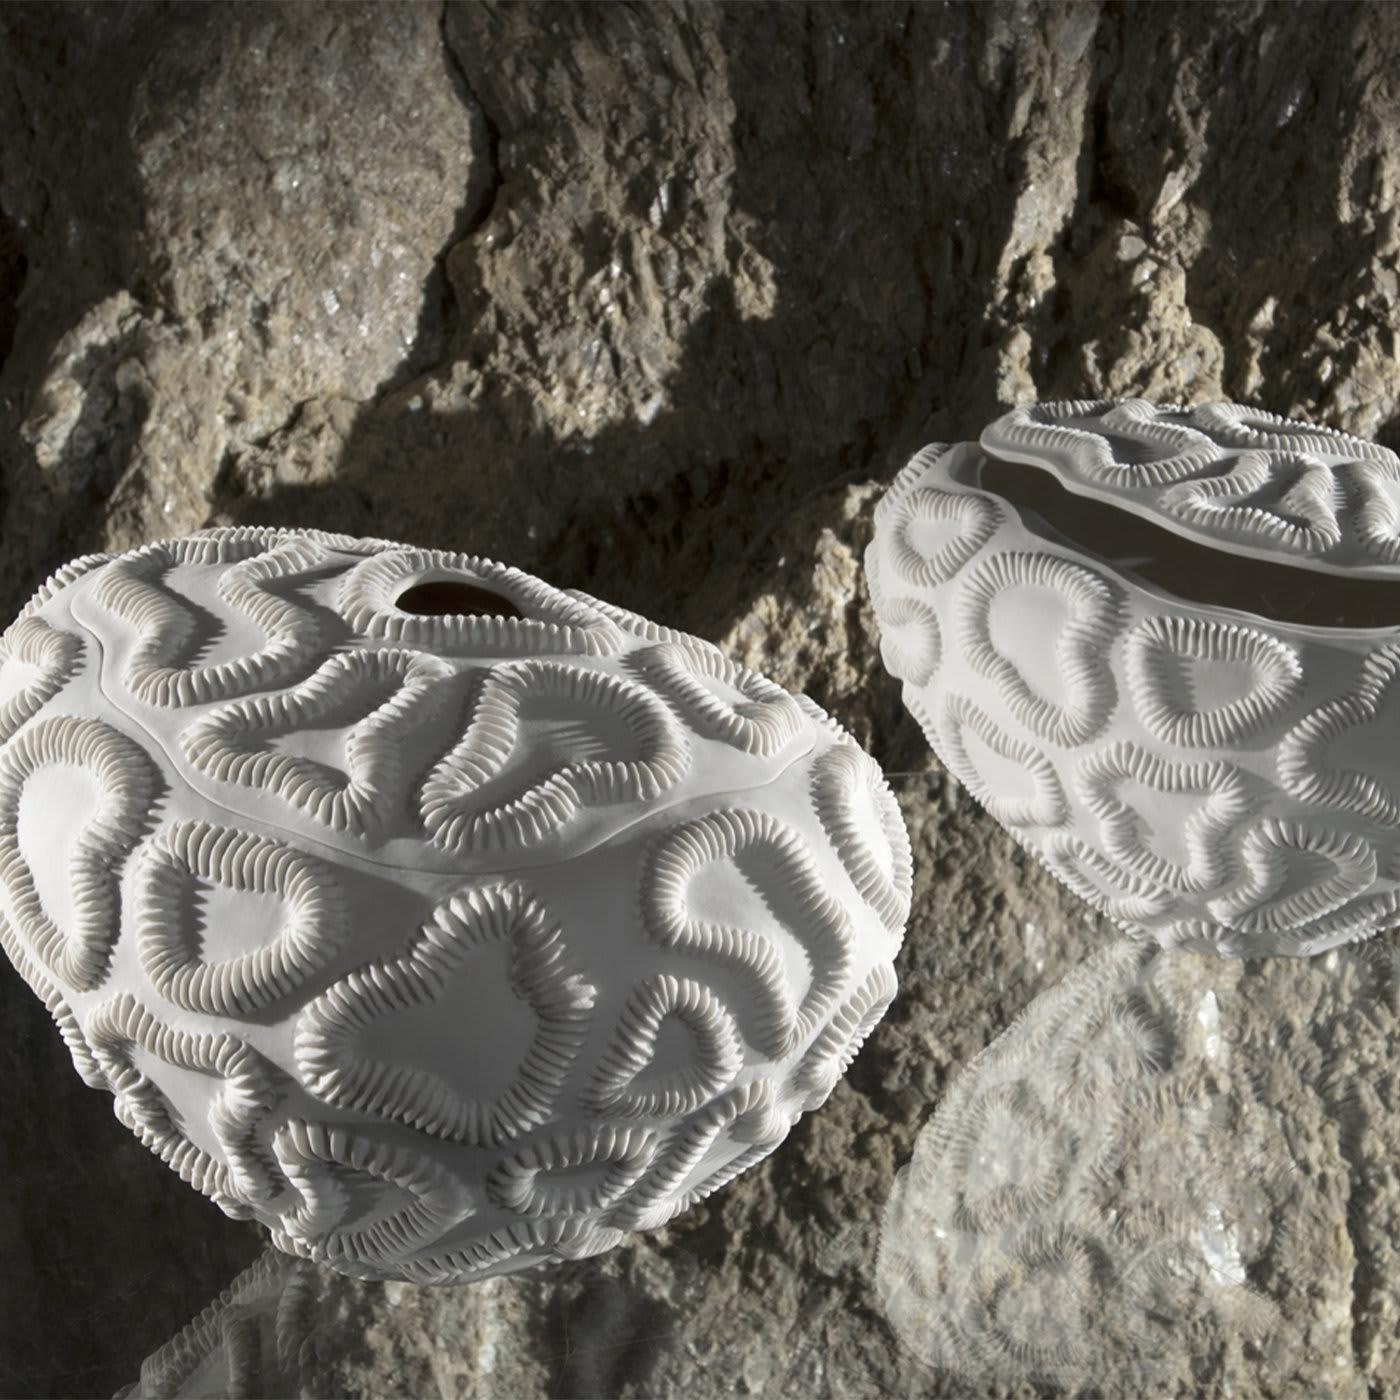 Die Lithos White Bowl hat eine herrliche Textur mit fossilähnlichen Formen auf der Oberfläche. Die schöne Komposition, die perfekte Form und der abnehmbare Deckel machen die Schale zu einer stilvollen Ergänzung für jeden Tisch in einem modernen